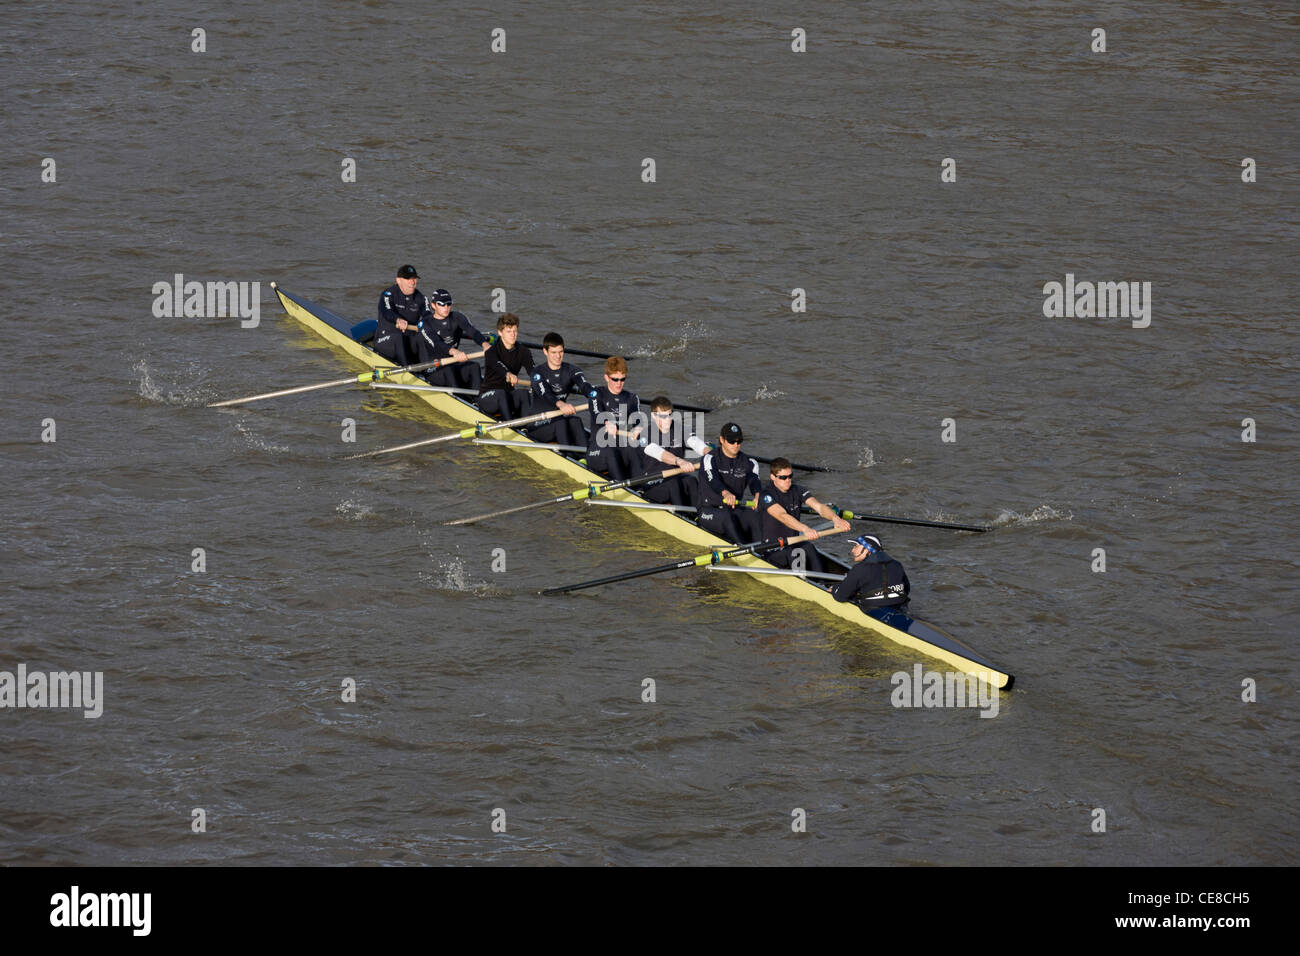 Ein Boot von der Universität Oxford rowing Team rundet die Biegung der Themse in Putney, West London während einer Trainingseinheit Winter. Stockfoto